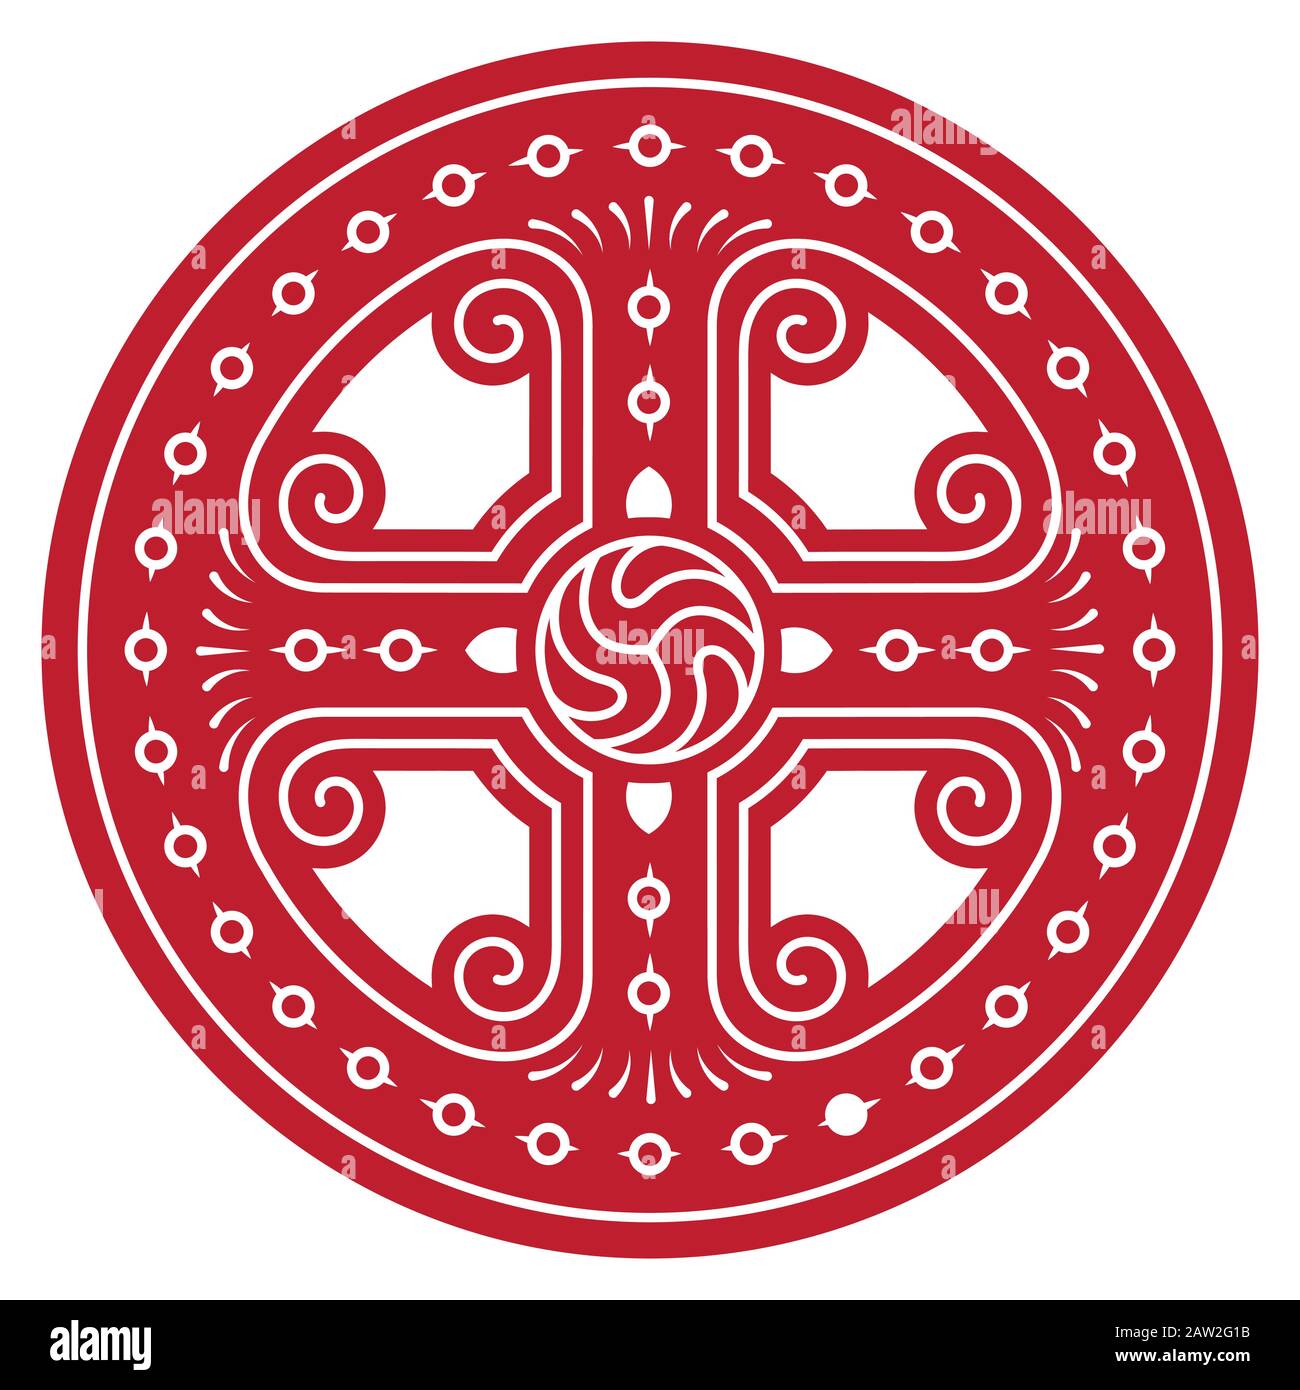 Conception Celtique Ronde Ancienne. Nœud celtique, mandala Illustration de Vecteur